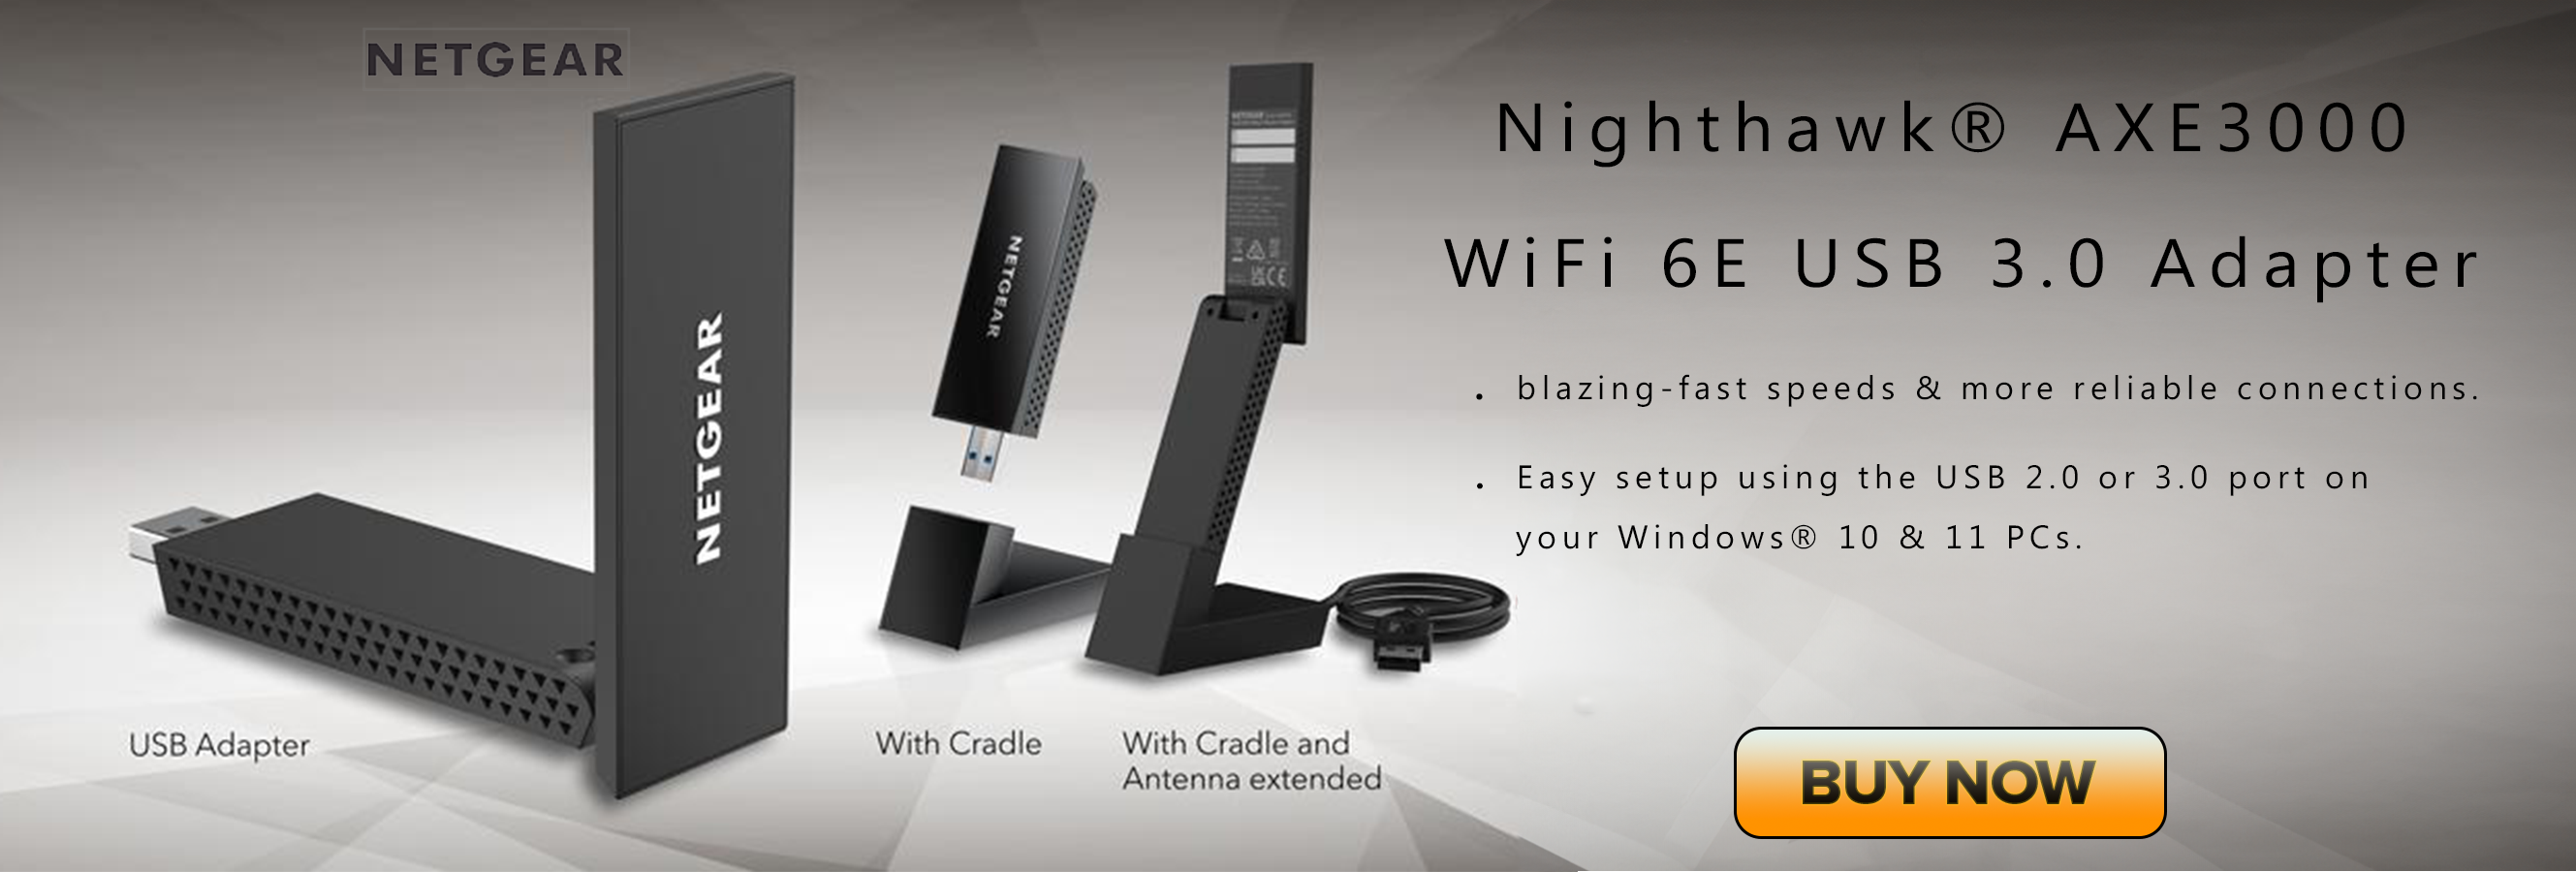 Netgear Nighthawk AXE3000 WiFi 6E USB 3.0 Adapter (A8000-100PAS)